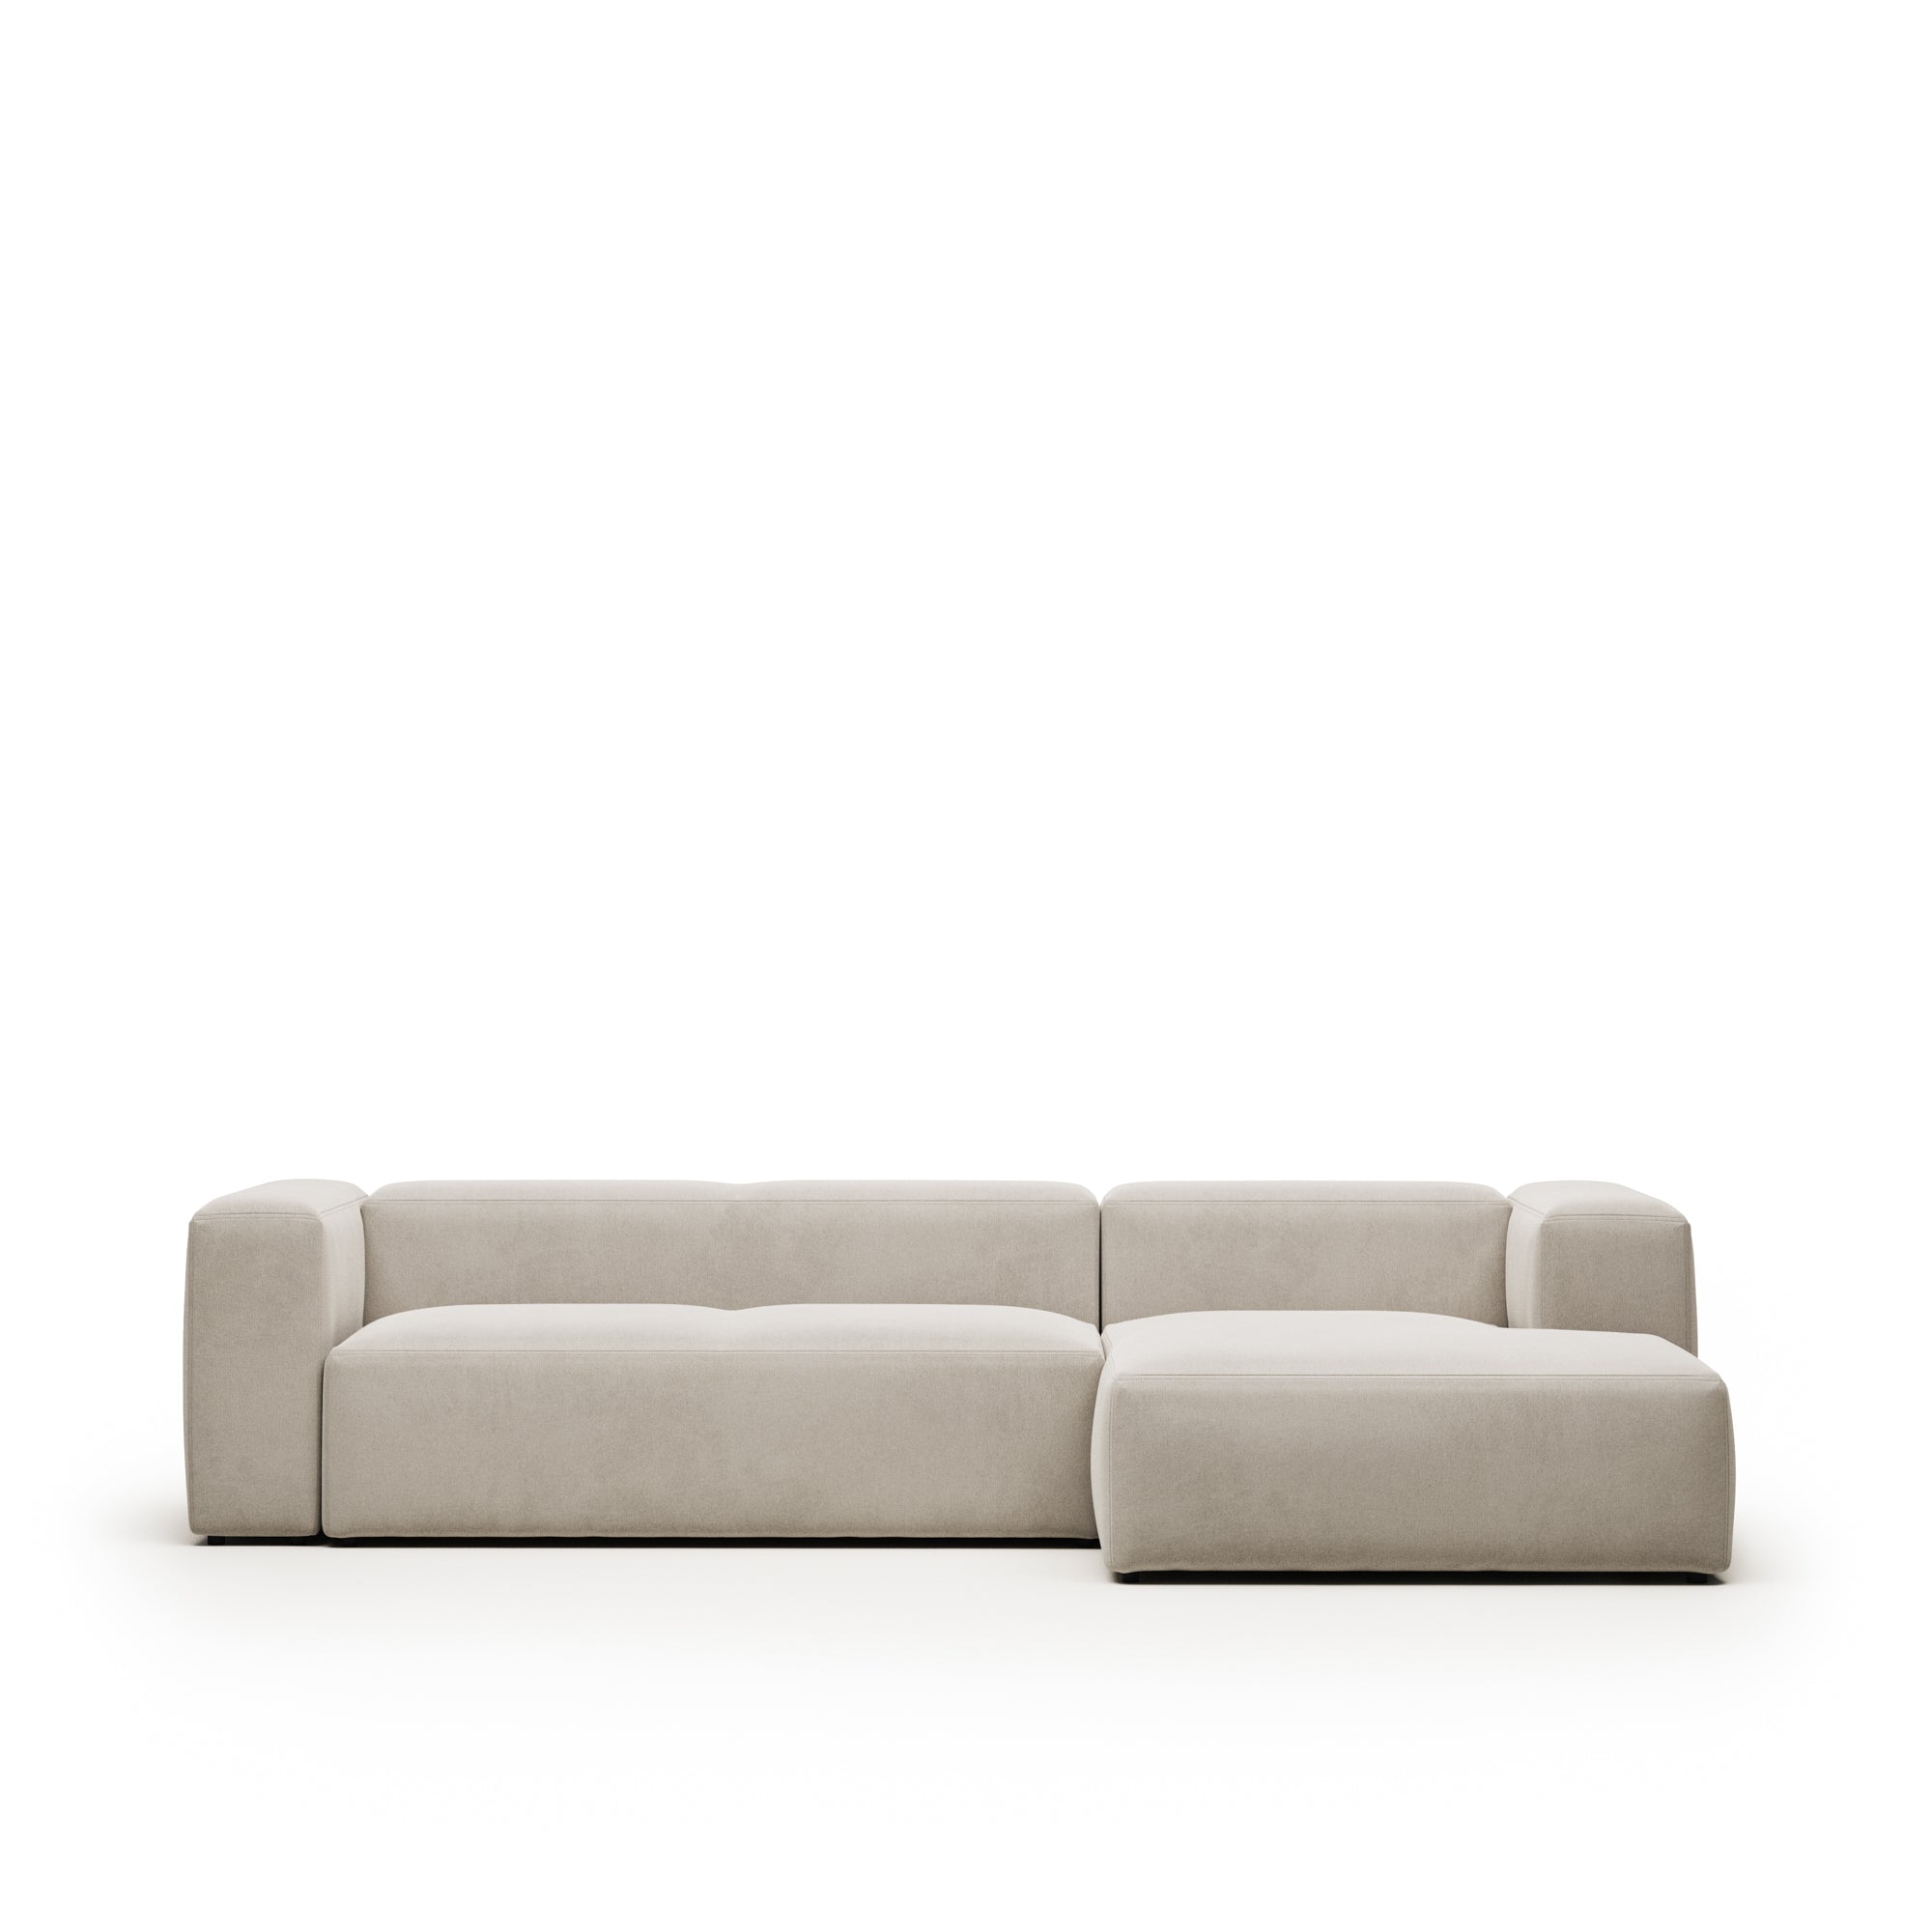 Blok 3 személyes kanapé jobb oldali fekvőfotellel, bézs színben, 300 cm